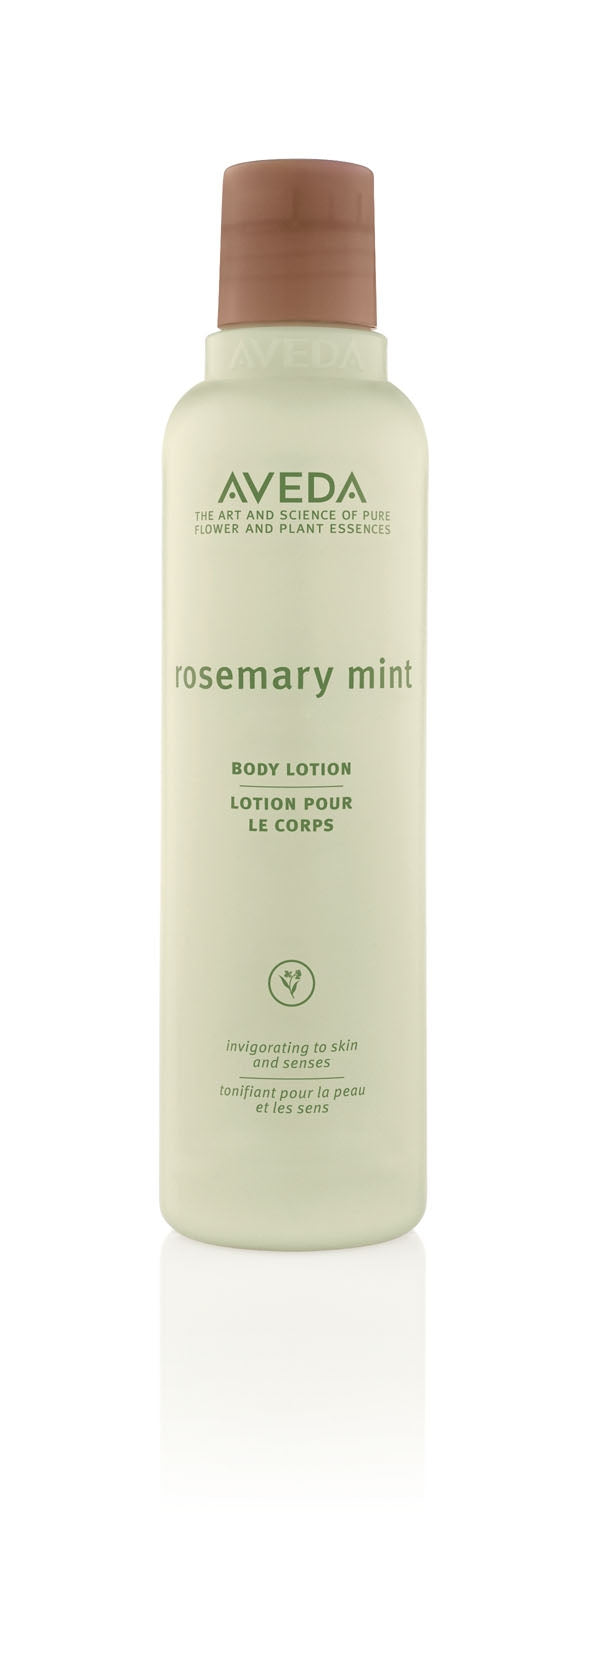 Rosemary Mint Body Lotion